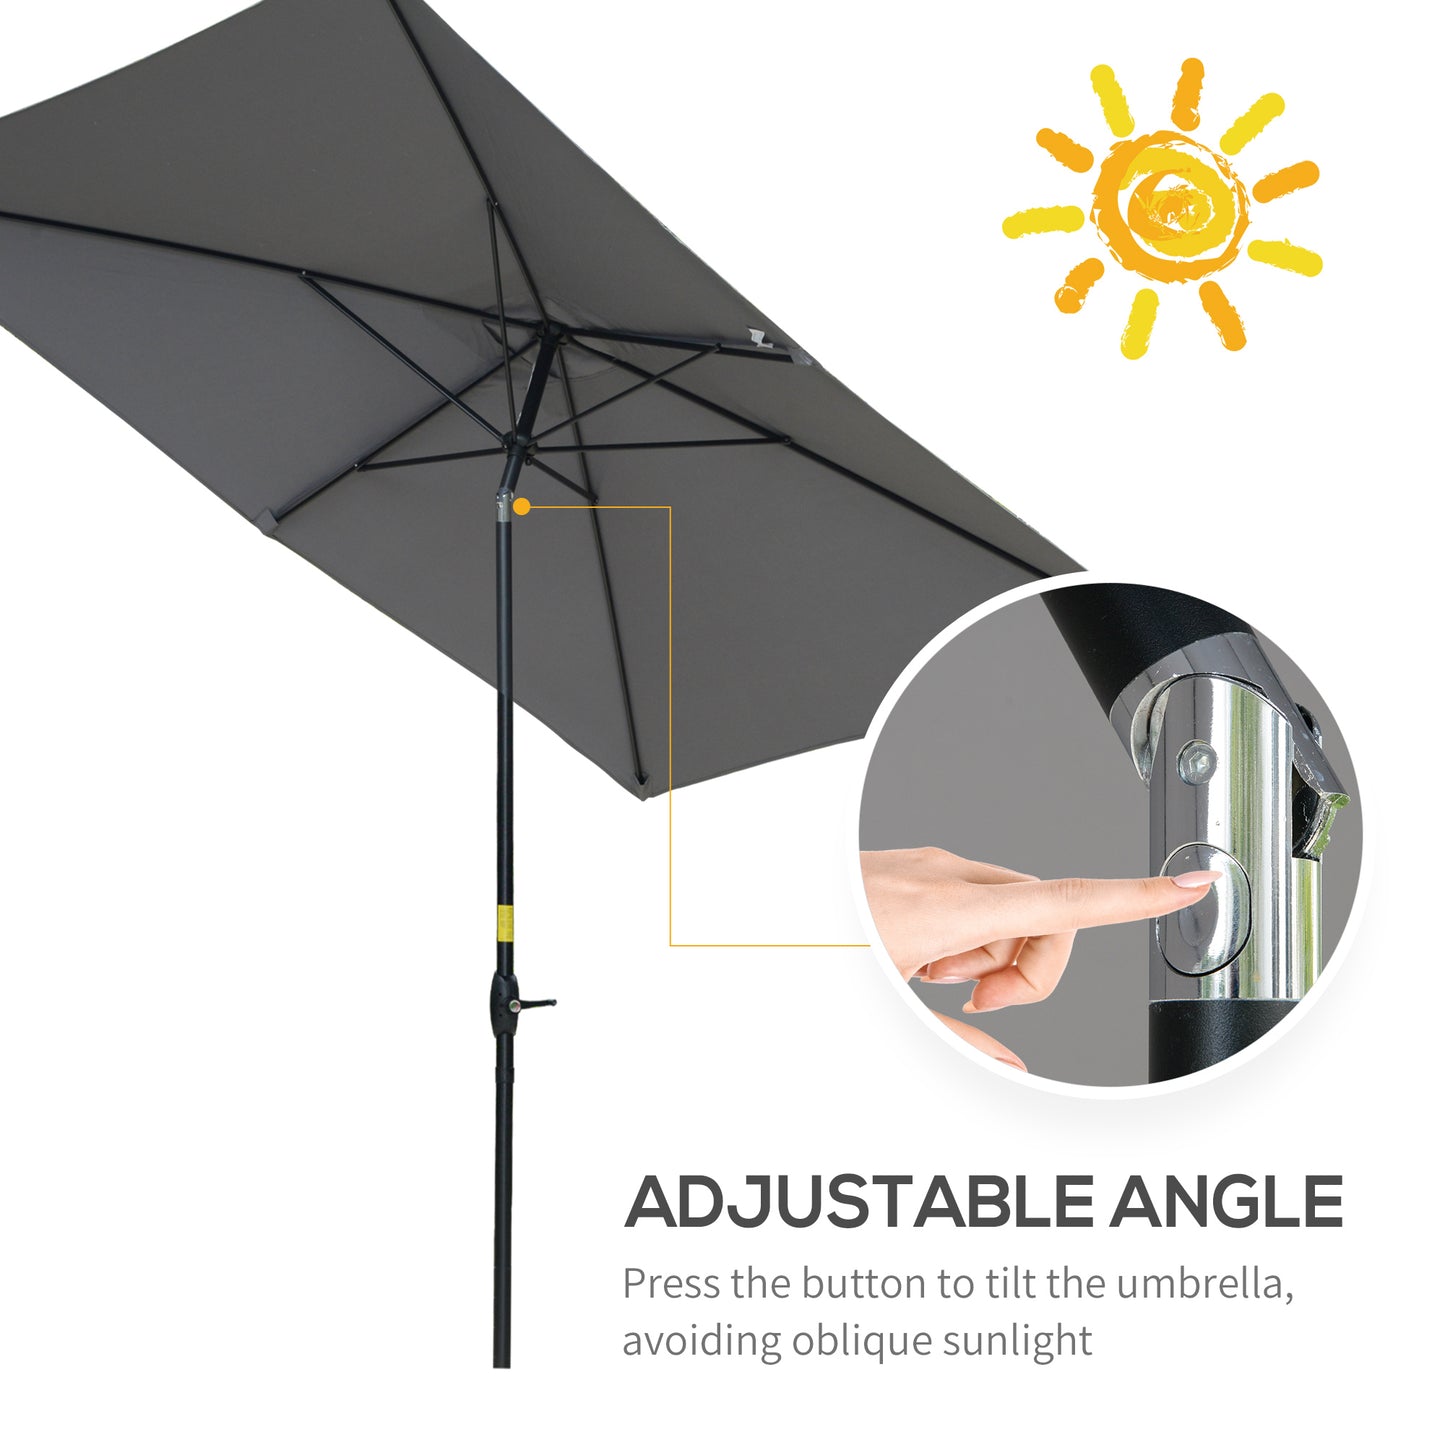 Outsunny 2 x 3m Rectangular Market Umbrella Patio Outdoor Table Umbrellas with Crank & Push Button Tilt, Dark Grey